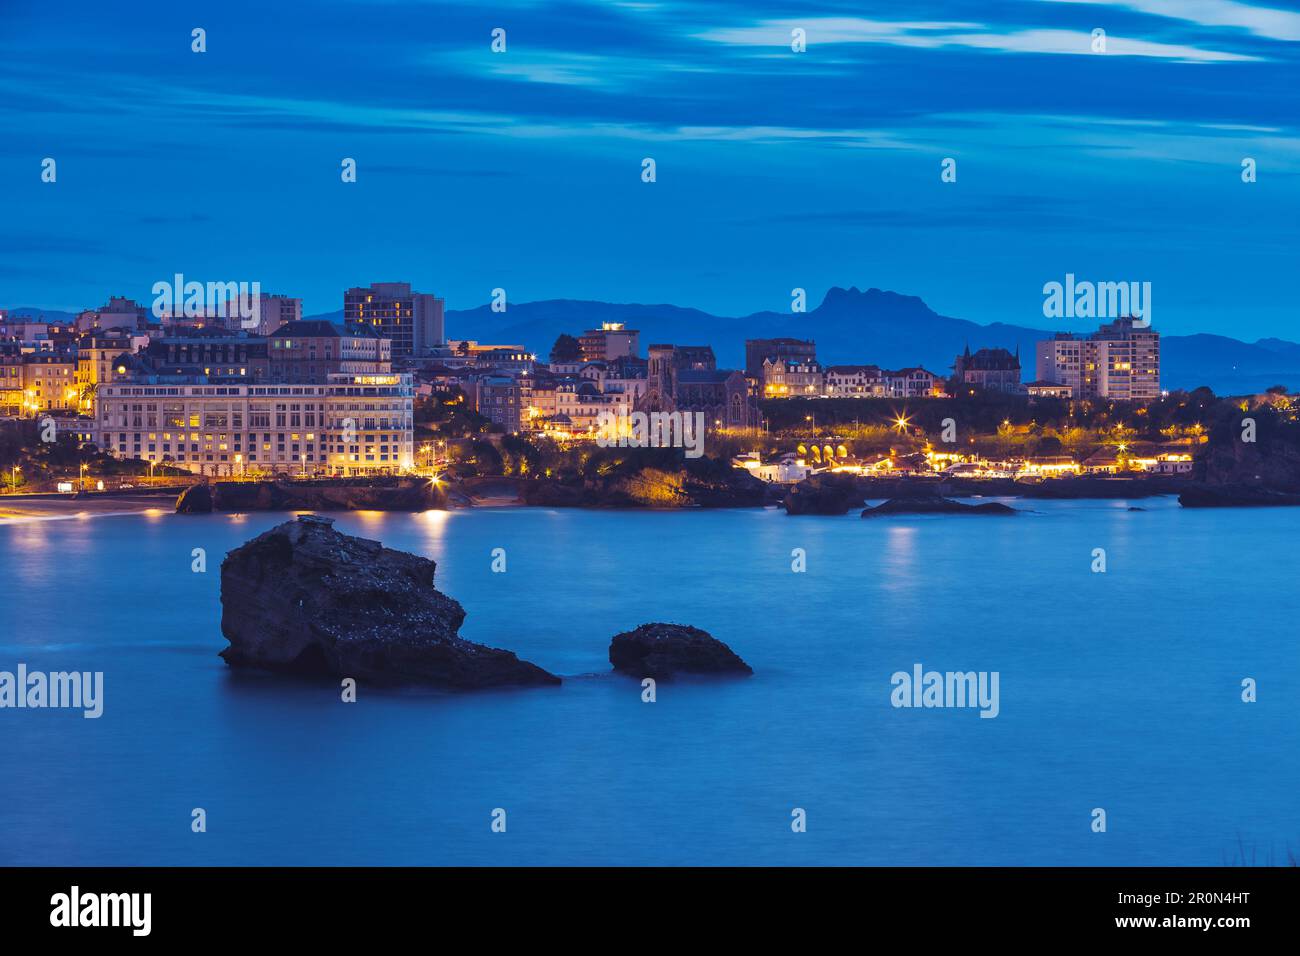 La Plage Miramar et la Grande Plage, Biarritz, französisches Baskenland, Frankreich bei Nacht Stockfoto